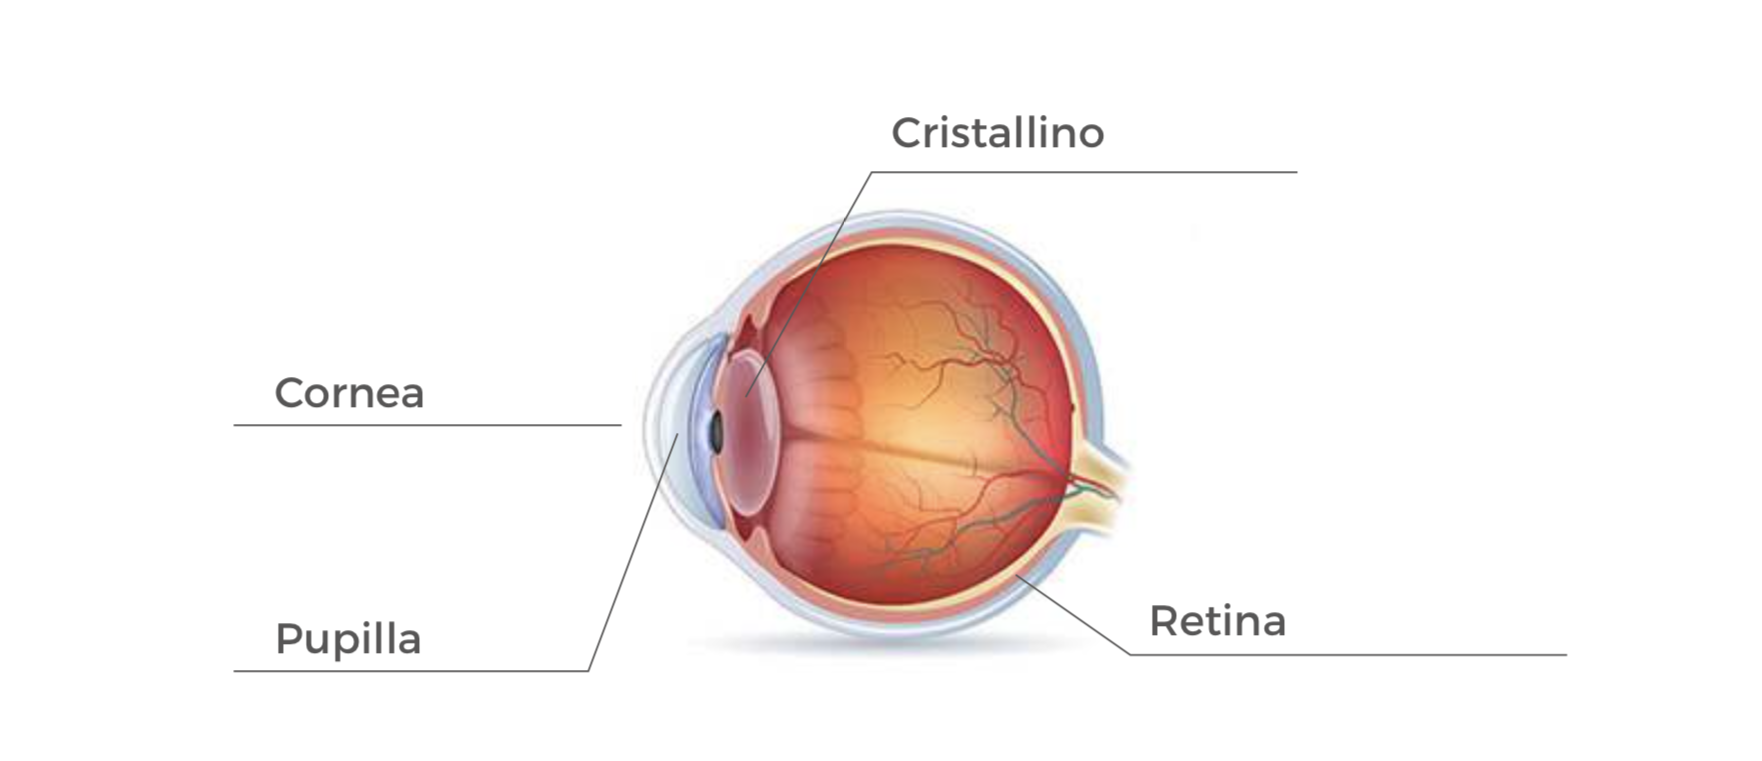 1 Il Cristallino è una lente che si trova all'interno dell'occhio